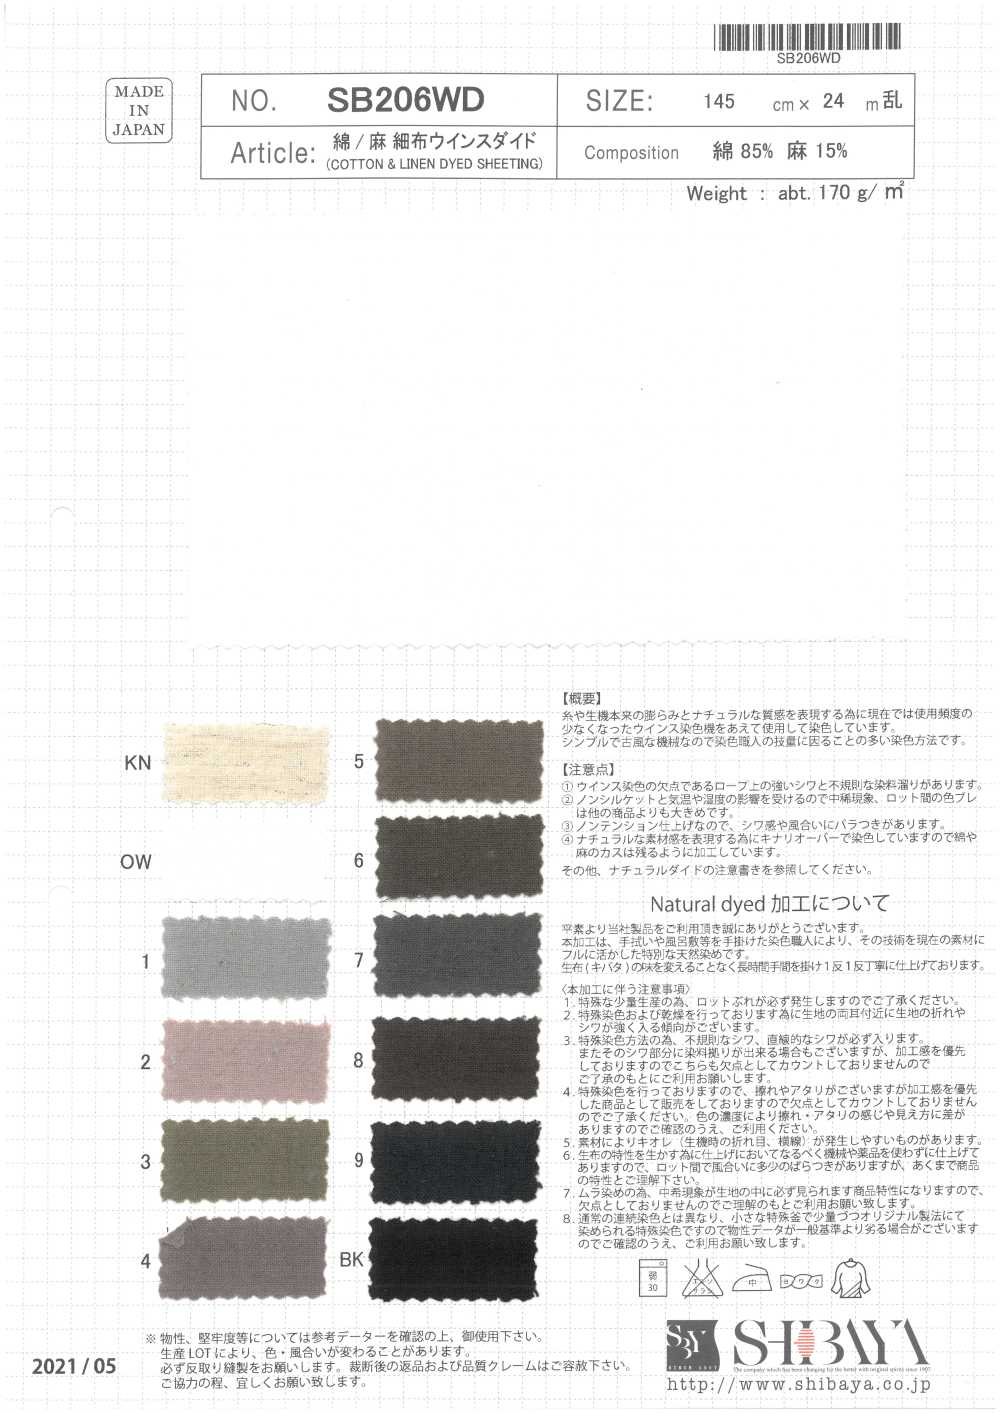 SB206WD Färben Von Baumwoll-/Leinenstoffen[Textilgewebe] SHIBAYA